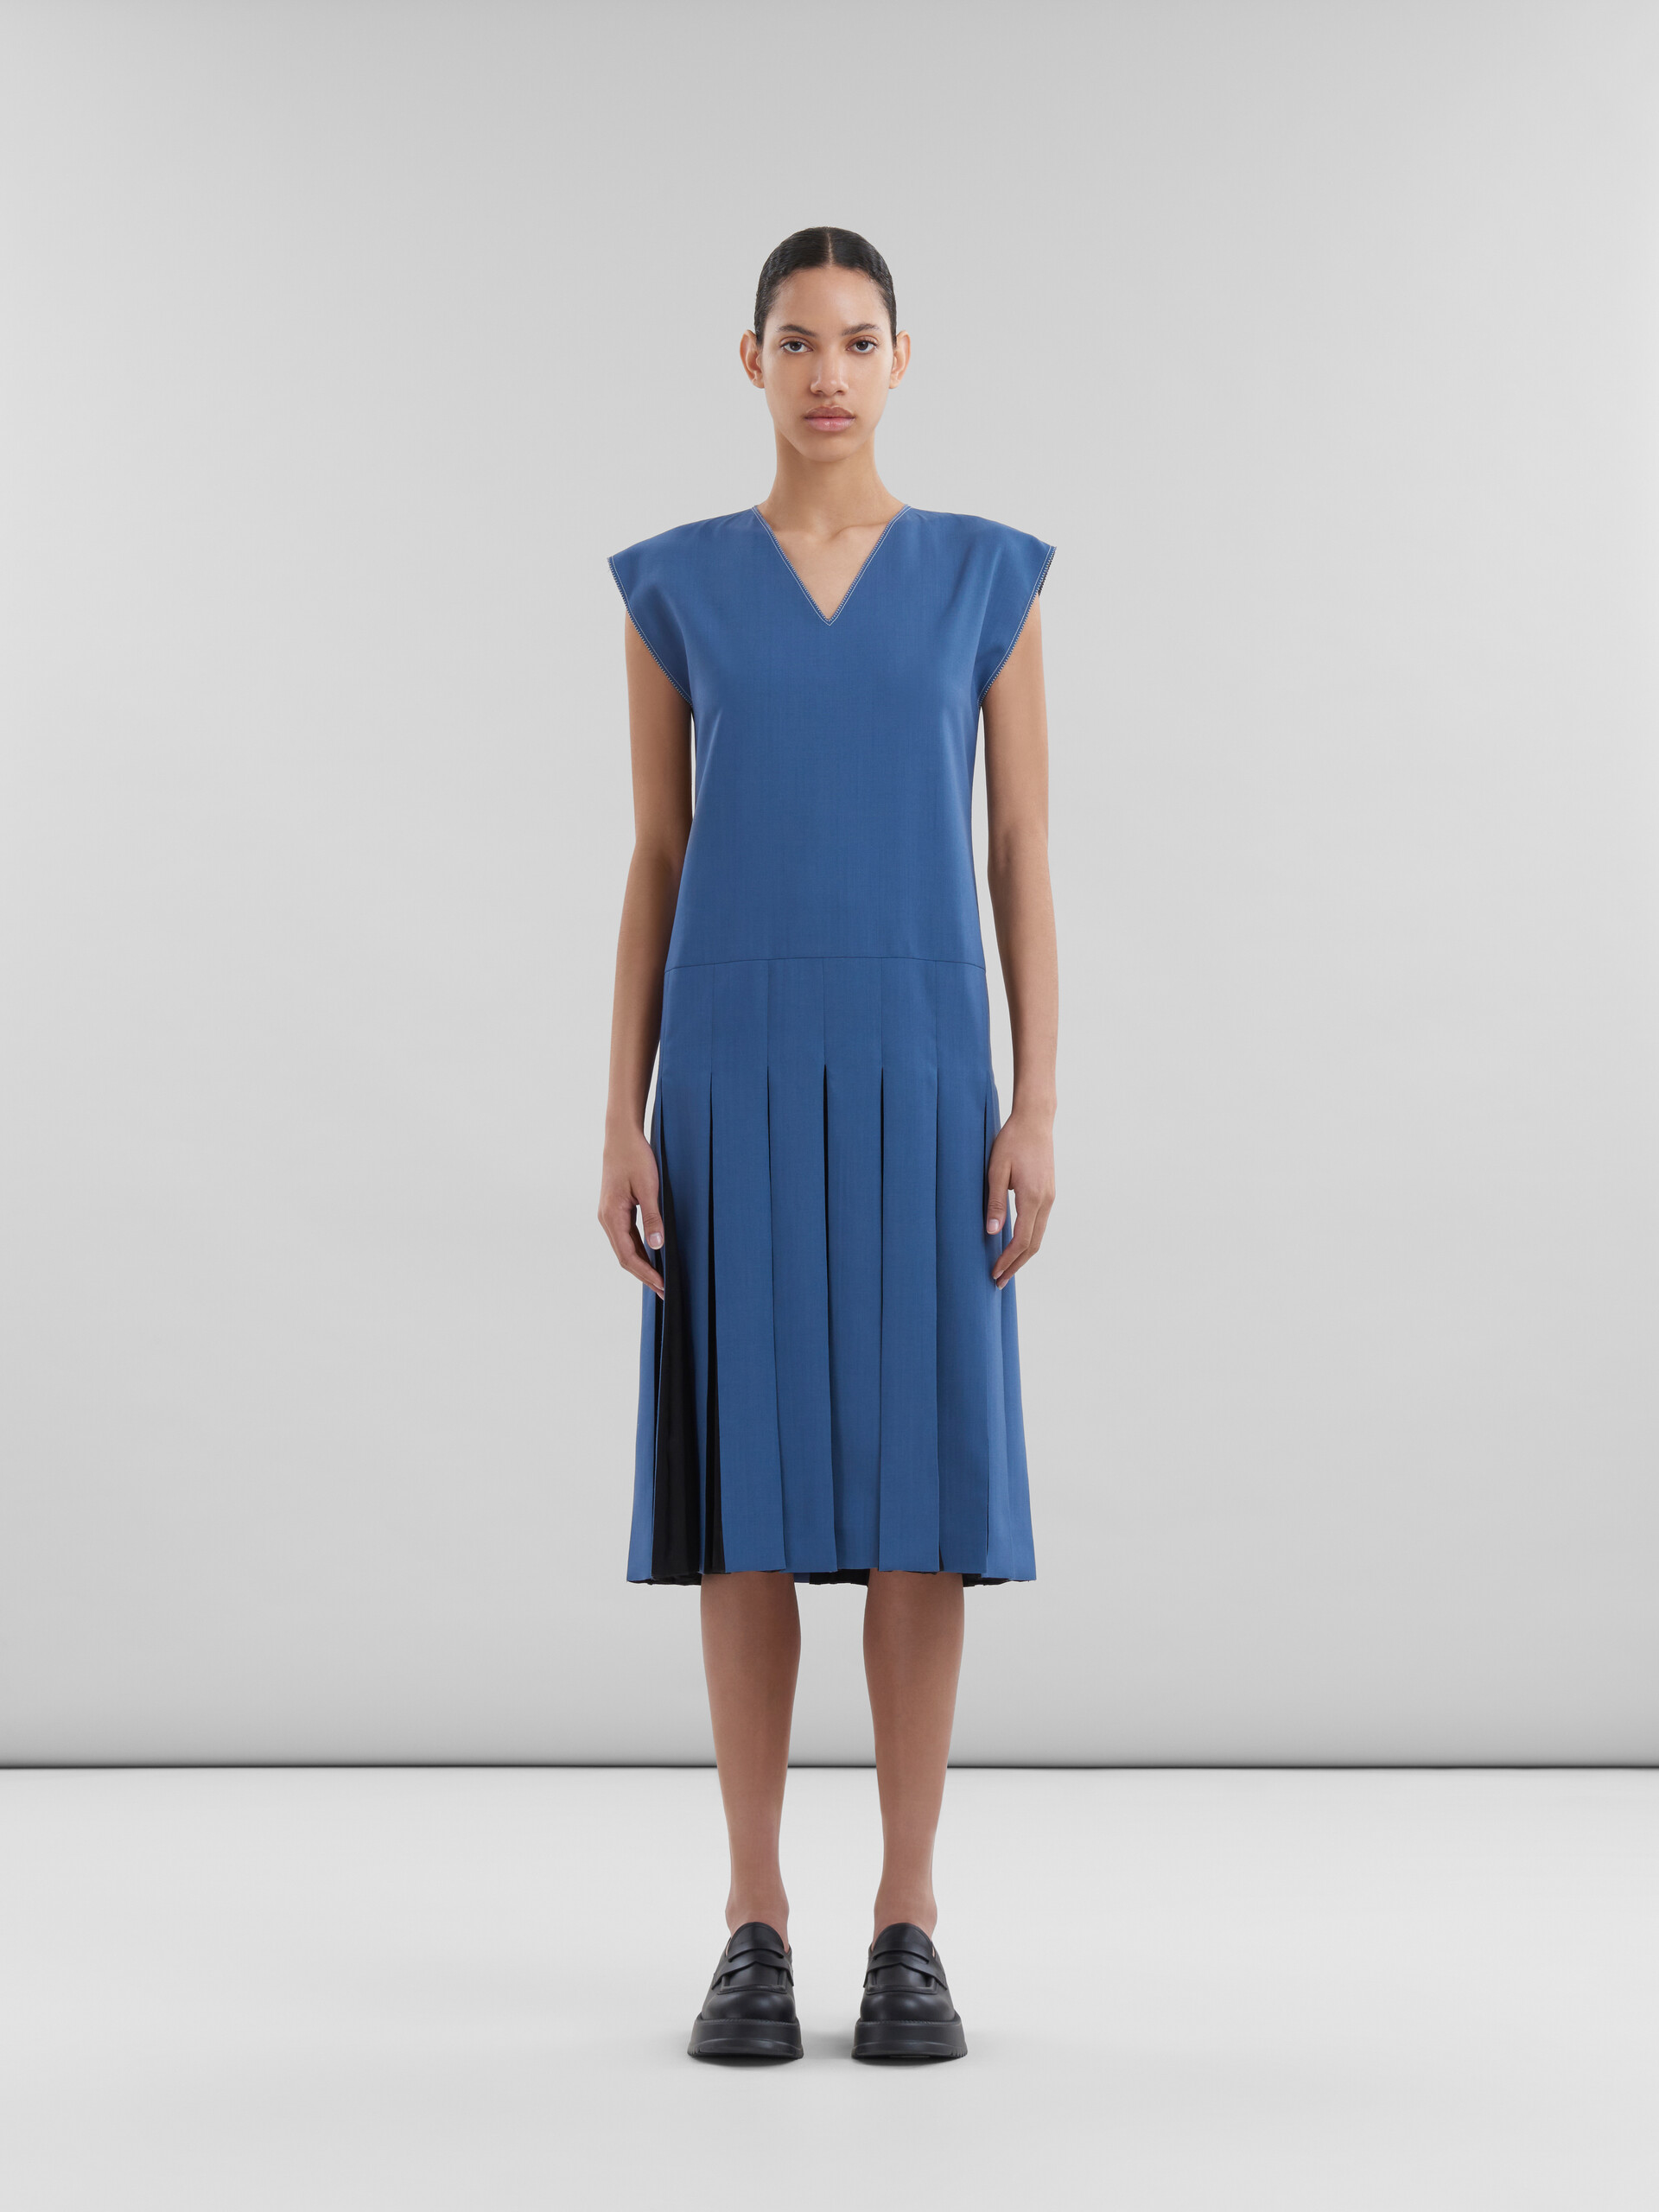 Vestido azul de lana tropical con pliegues en contraste - Vestidos - Image 2